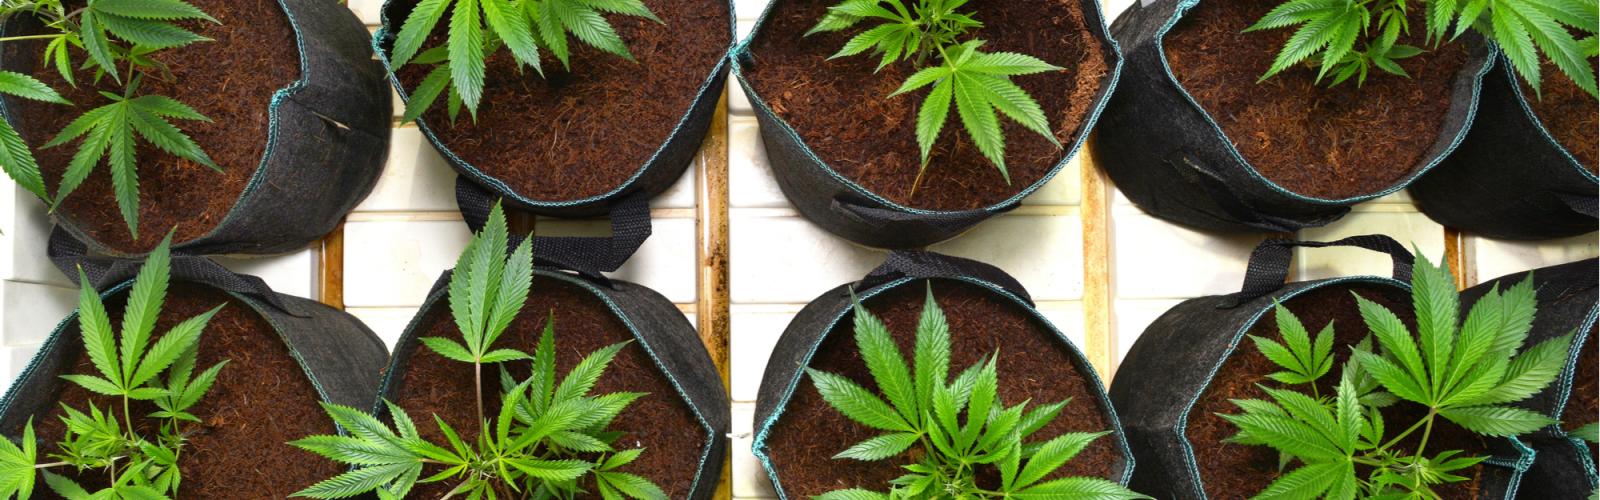 Cultiver différentes variétés de cannabis dans une même pièce